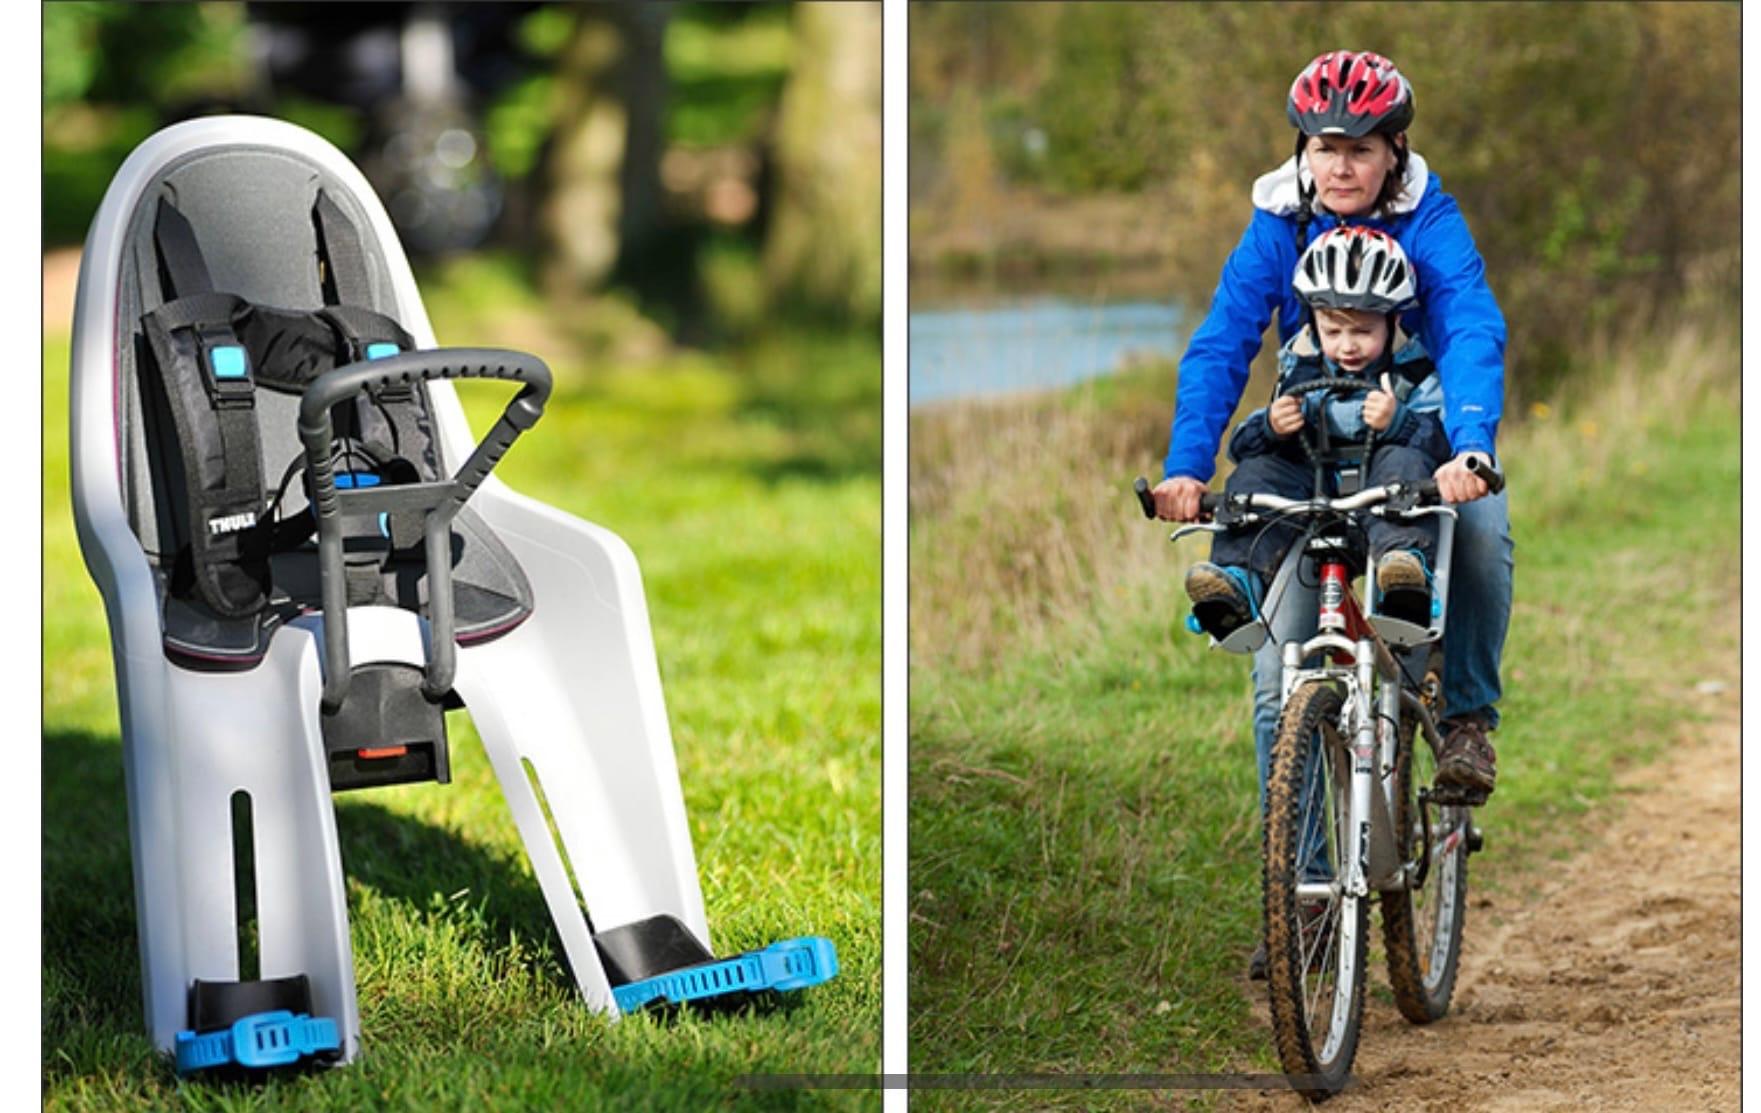 Велосипед с креслом для ребенка спереди